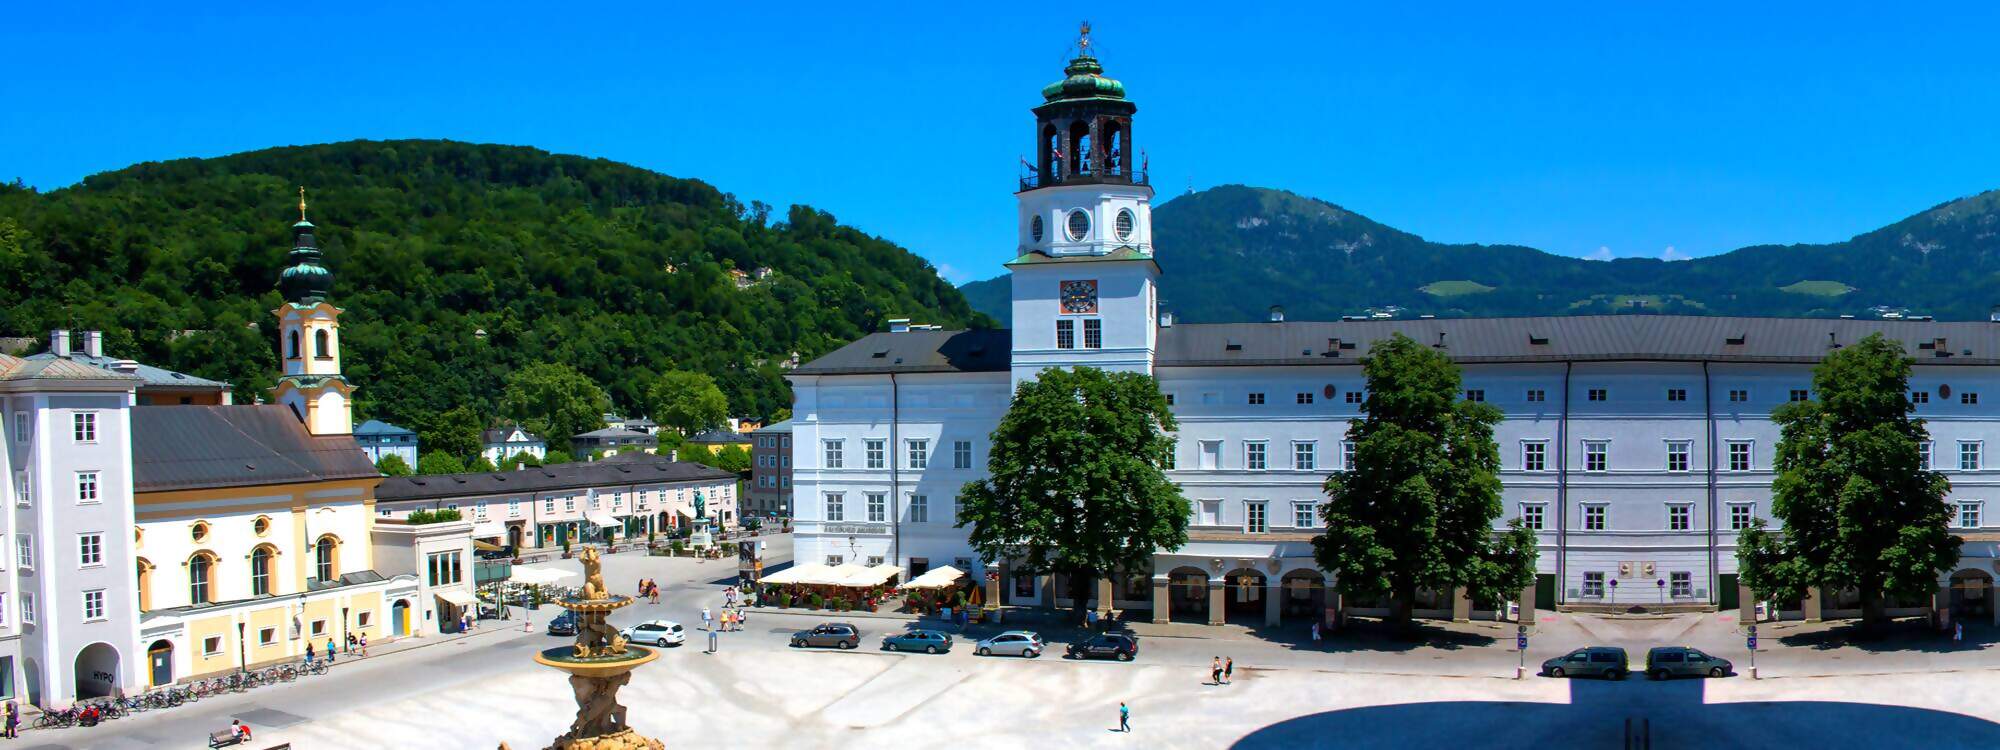 Der Residenzplatz in der Altstadt von Salzburg in Österreich